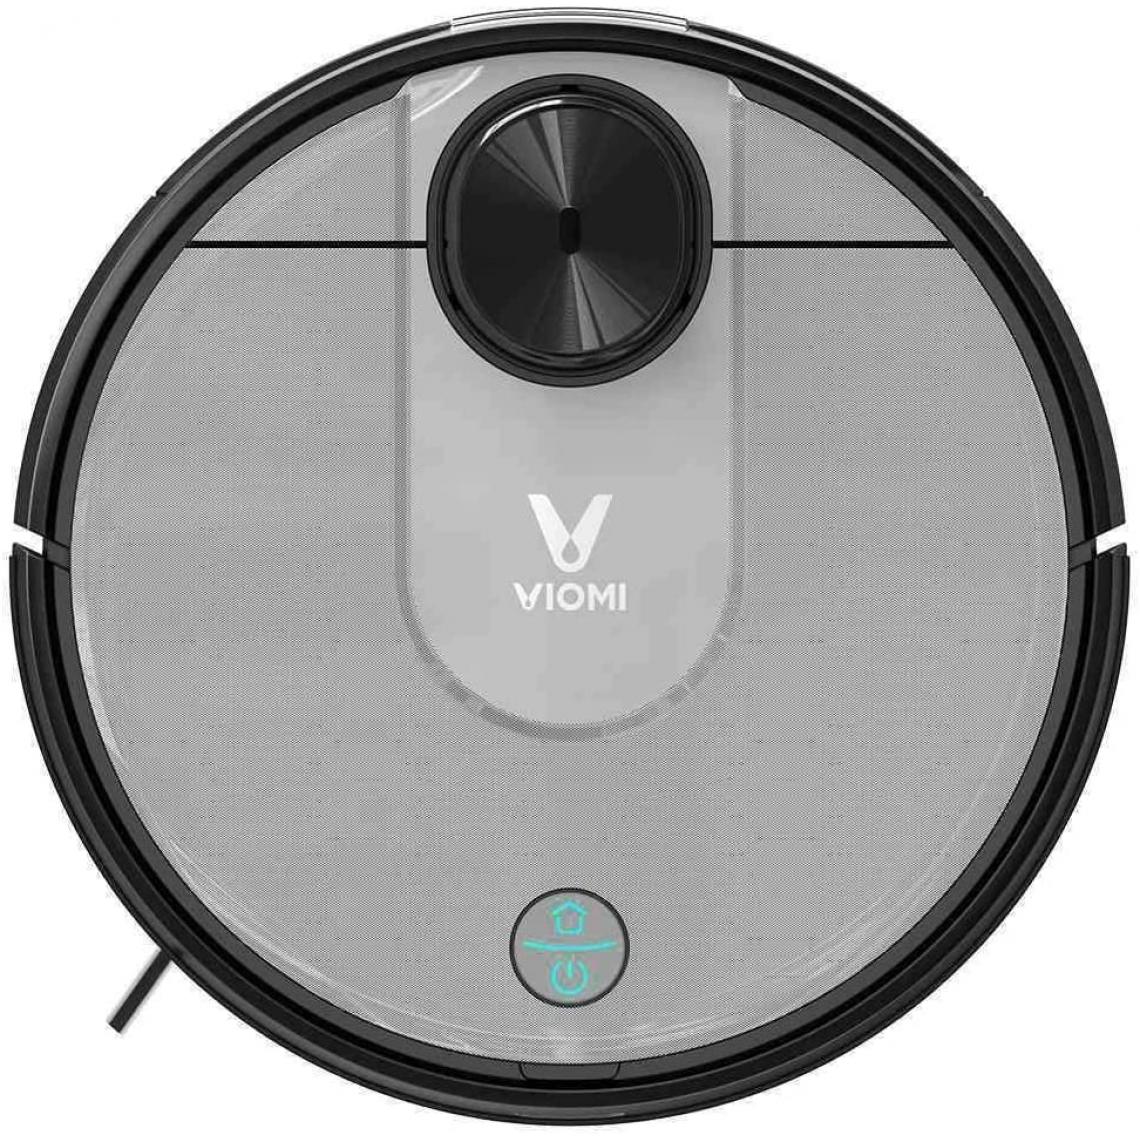 Viomi - VIOMI V2 Pro Aspirateur Robot 2100Pa Réservoir électrique LDS Navigation Laser Gris argent - Aspirateur robot